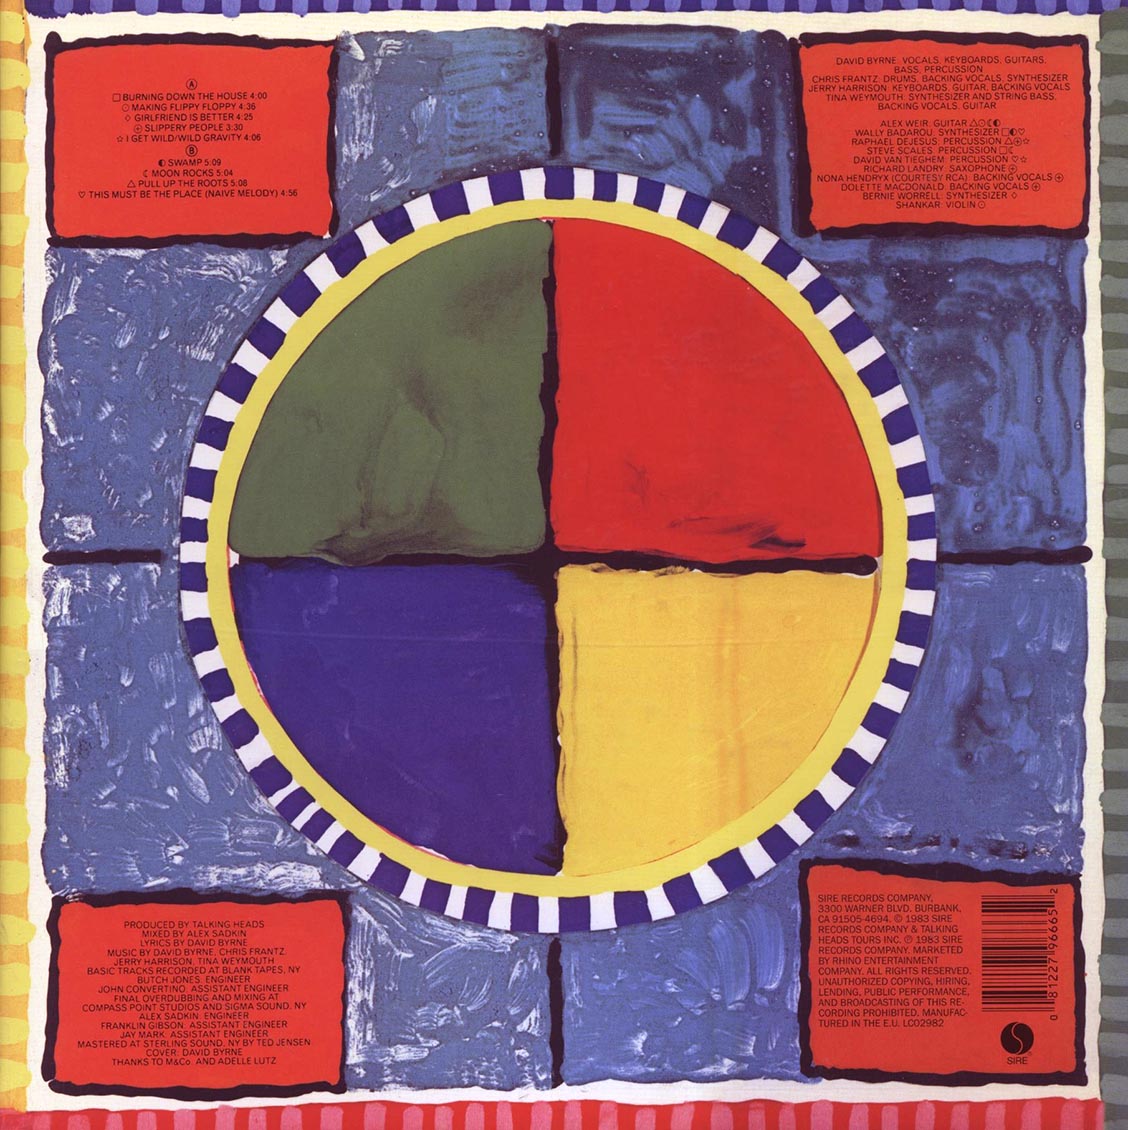 Talking Heads - Speaking In Tongues (180g) - Vinyl LP, LP